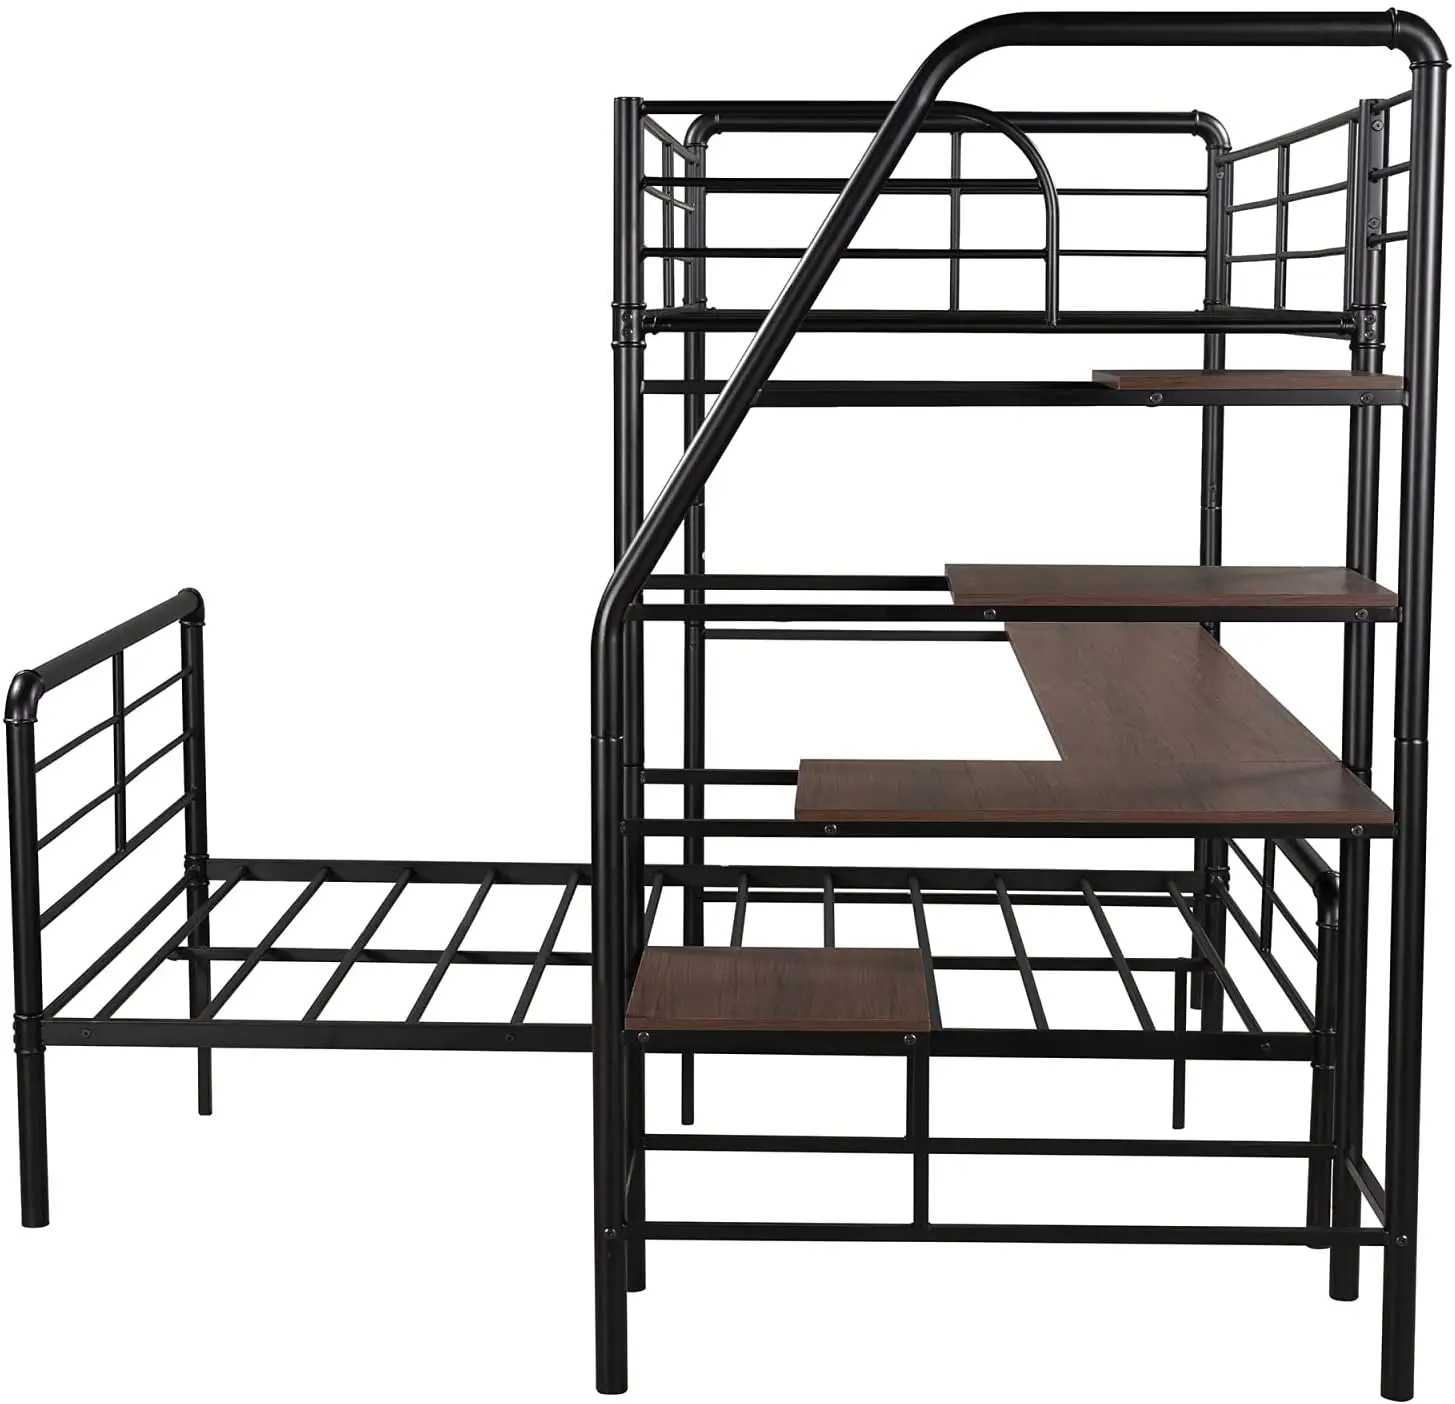 シングルクイーンキング寮大人の学生金属ベッドフレーム大人のロフトベッド学校の家庭用二段ベッド